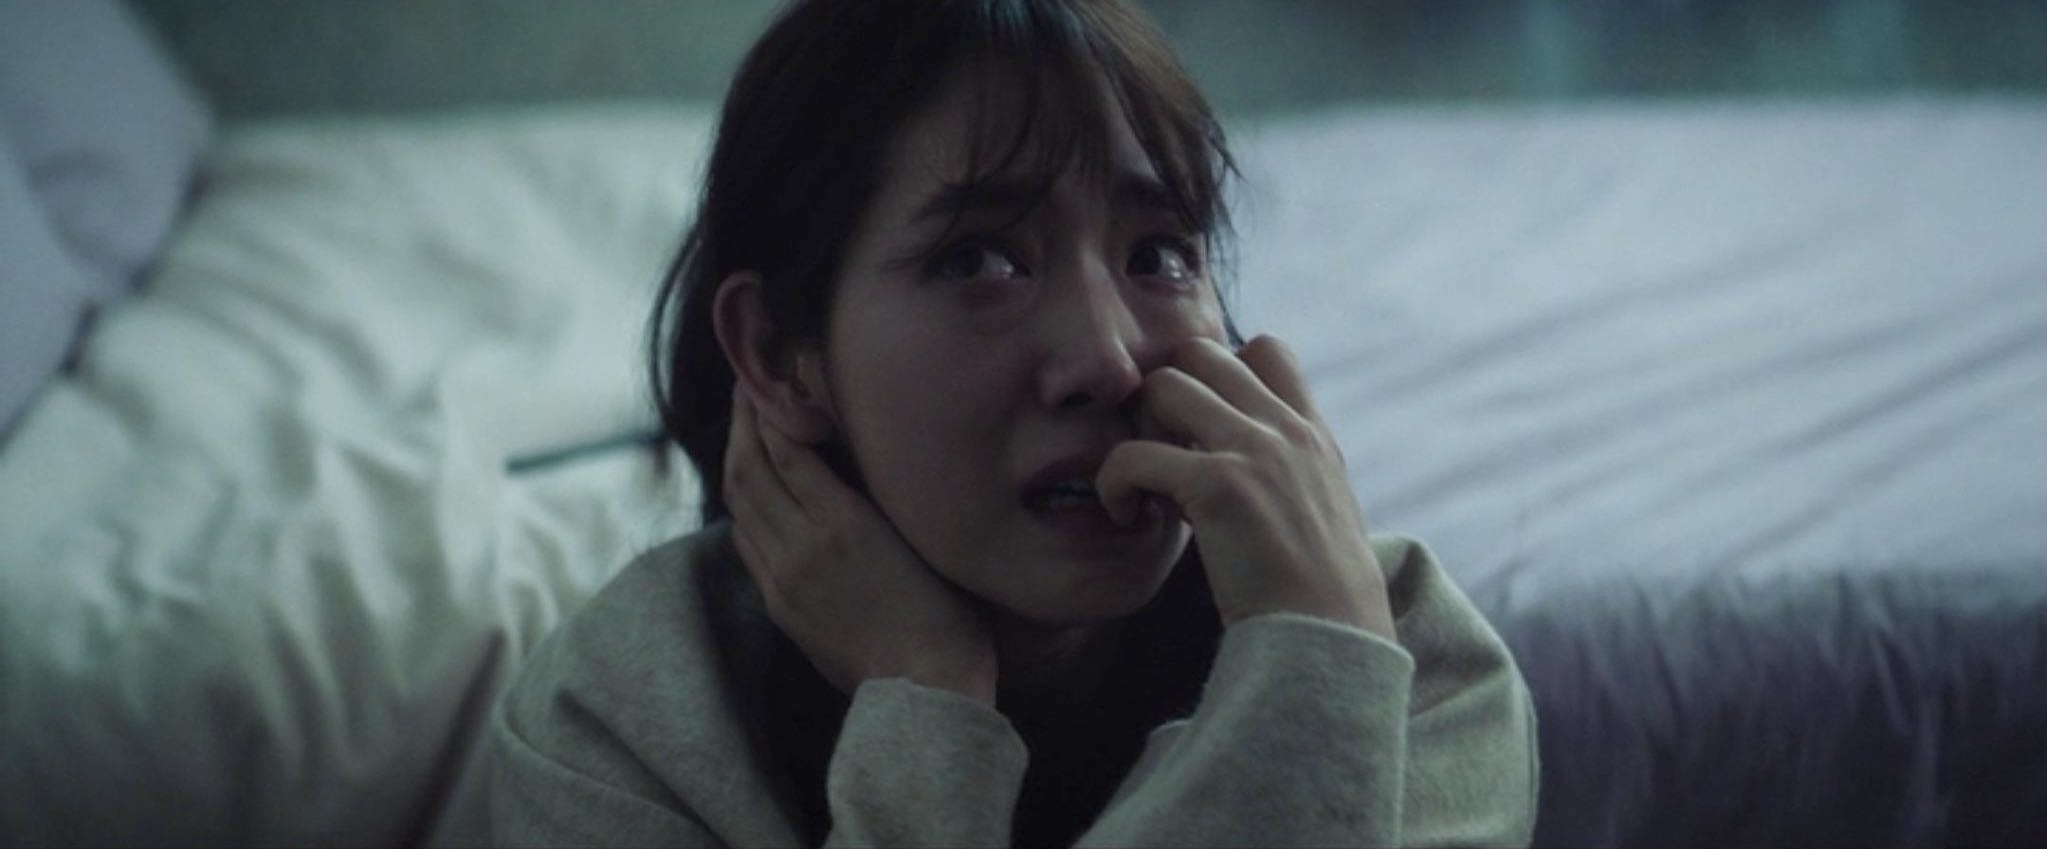 A imagem é de uma das cenas do filme. Nela, podemos ver a atriz Park Shin Hye sentada no chão, em frente à sua cama. Park é uma mulher de traços orientais, cabelos castanhos na altura dos ombros e franja. Ela veste uma blusa branca de mangas longas. Park está com uma feição assustada, com o olhar voltado para o canto superior esquerdo e roendo as unhas da mão esquerda.